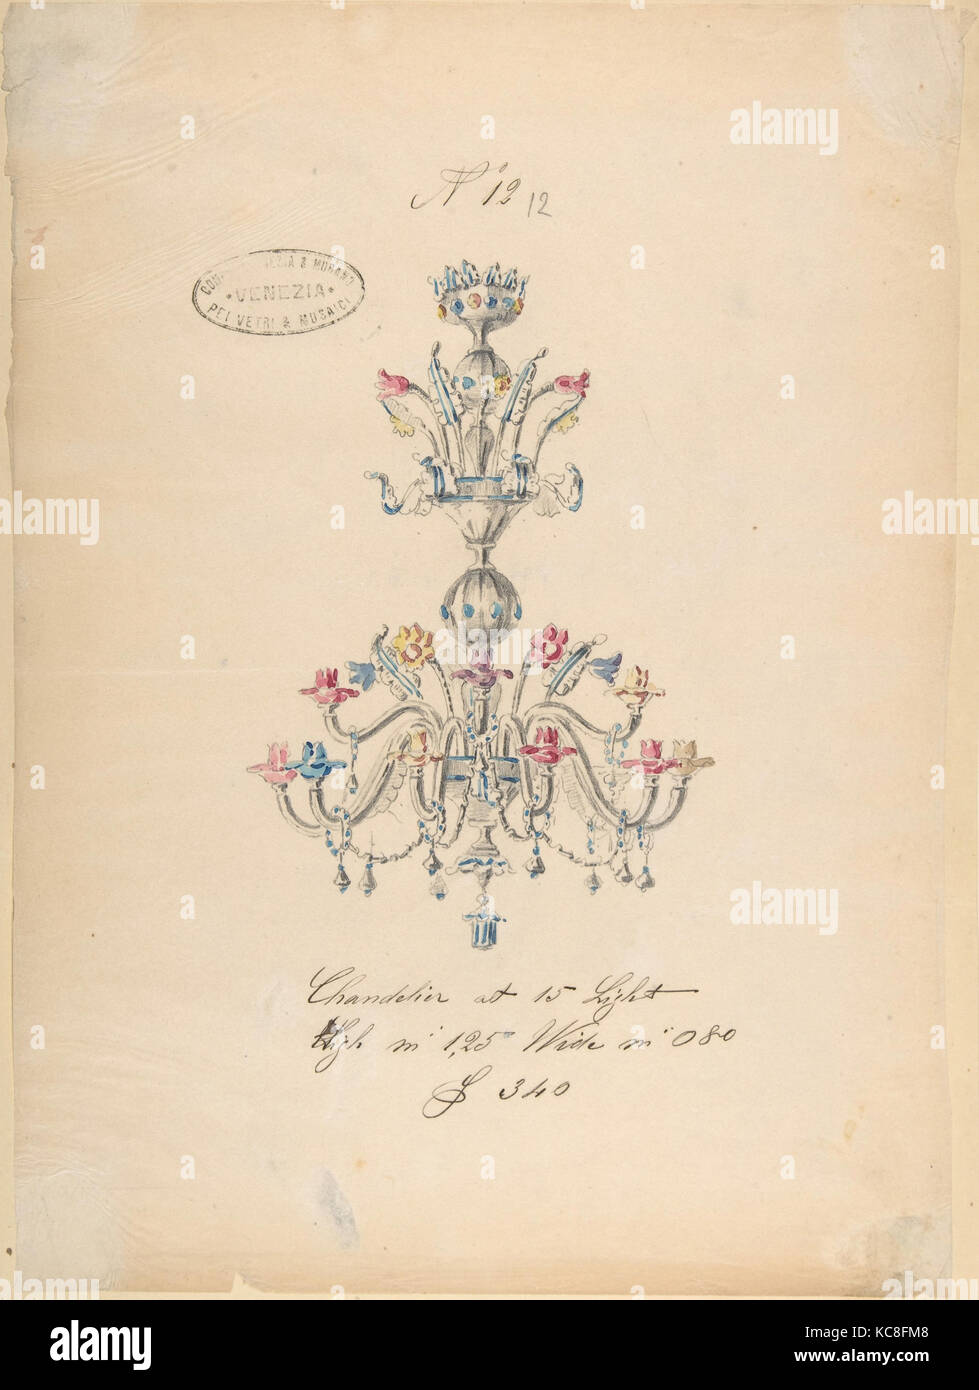 L'une des feuilles de dessins de Twenty-Three verrerie (miroirs, lustres, gobelets, etc.), Compagnia di Venezia & Murano, 1850 Banque D'Images